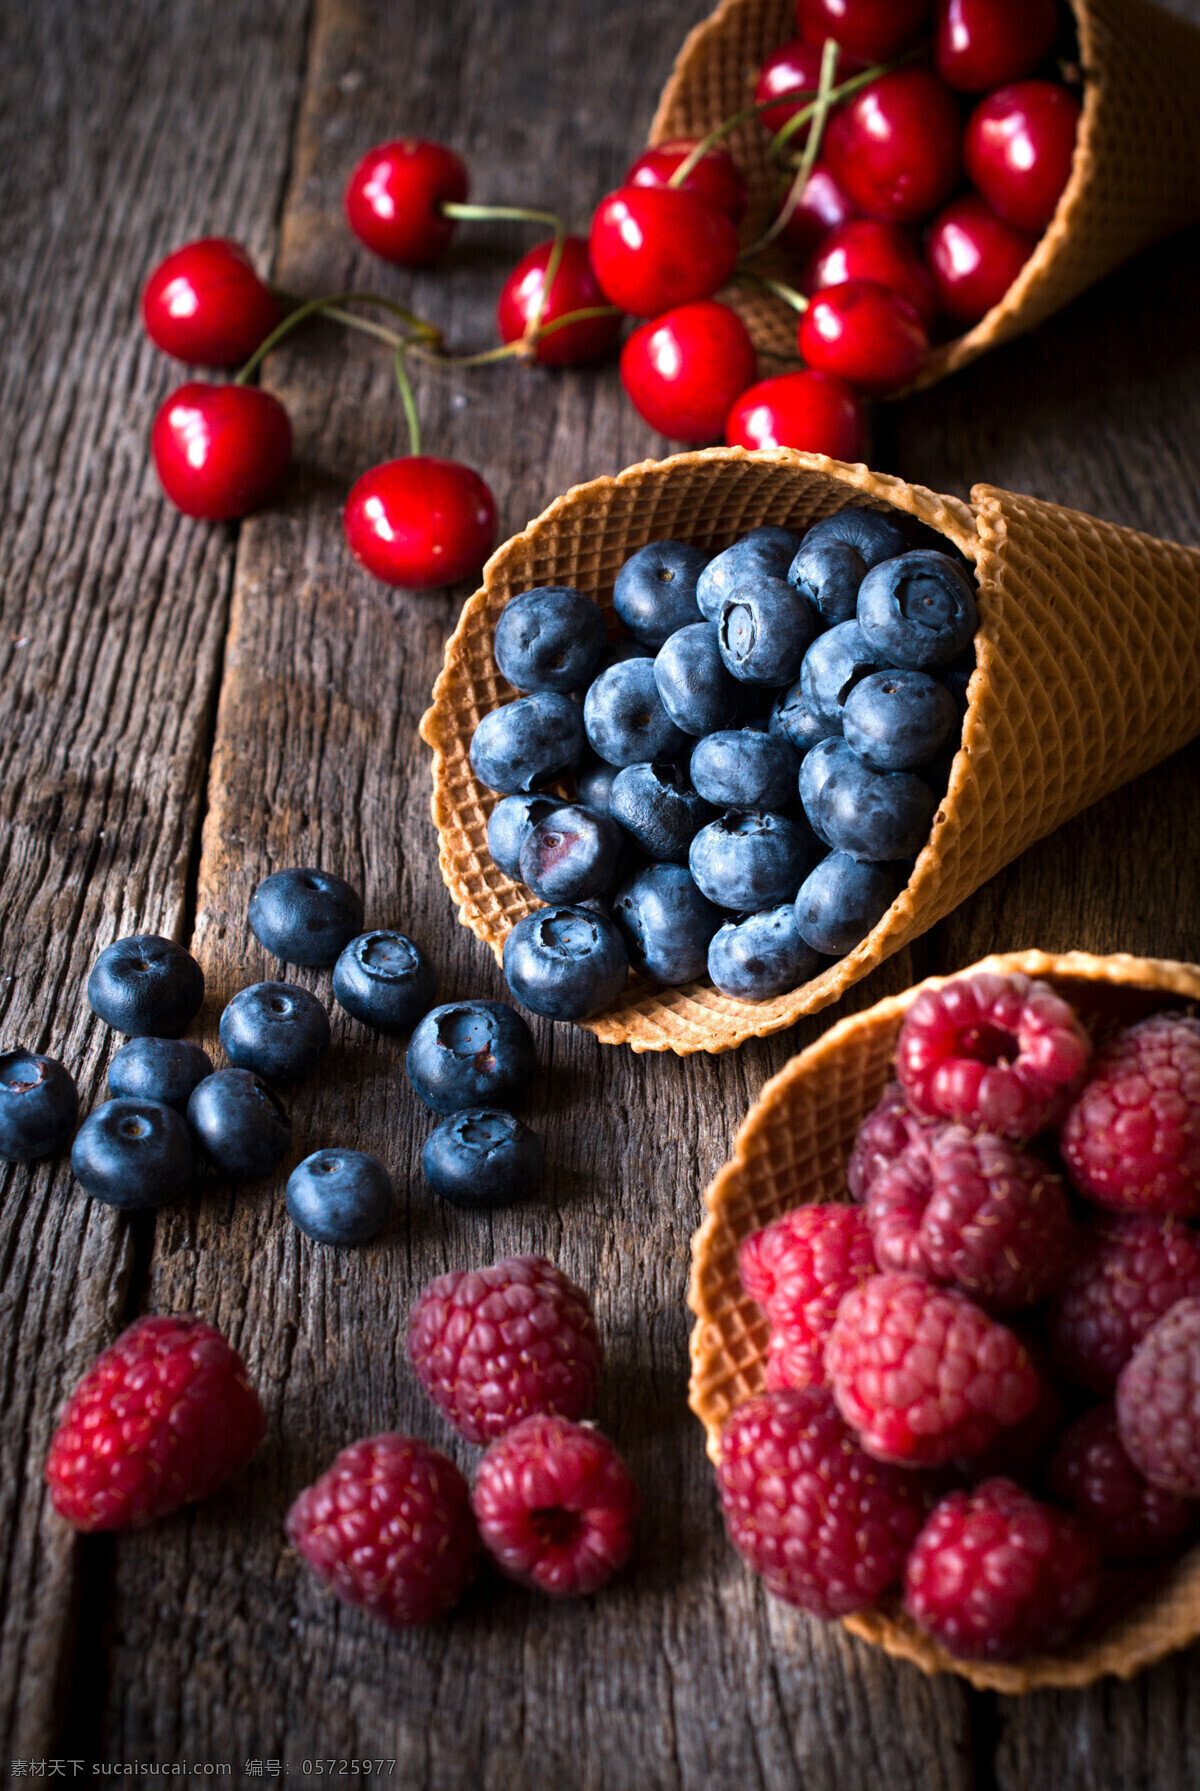 浆果类 新鲜水果 草莓 蓝莓 树莓 醋栗 美食 美味 水果篮 果篮 樱桃 果盘 油桃 桃子 水果拼盘 生物世界